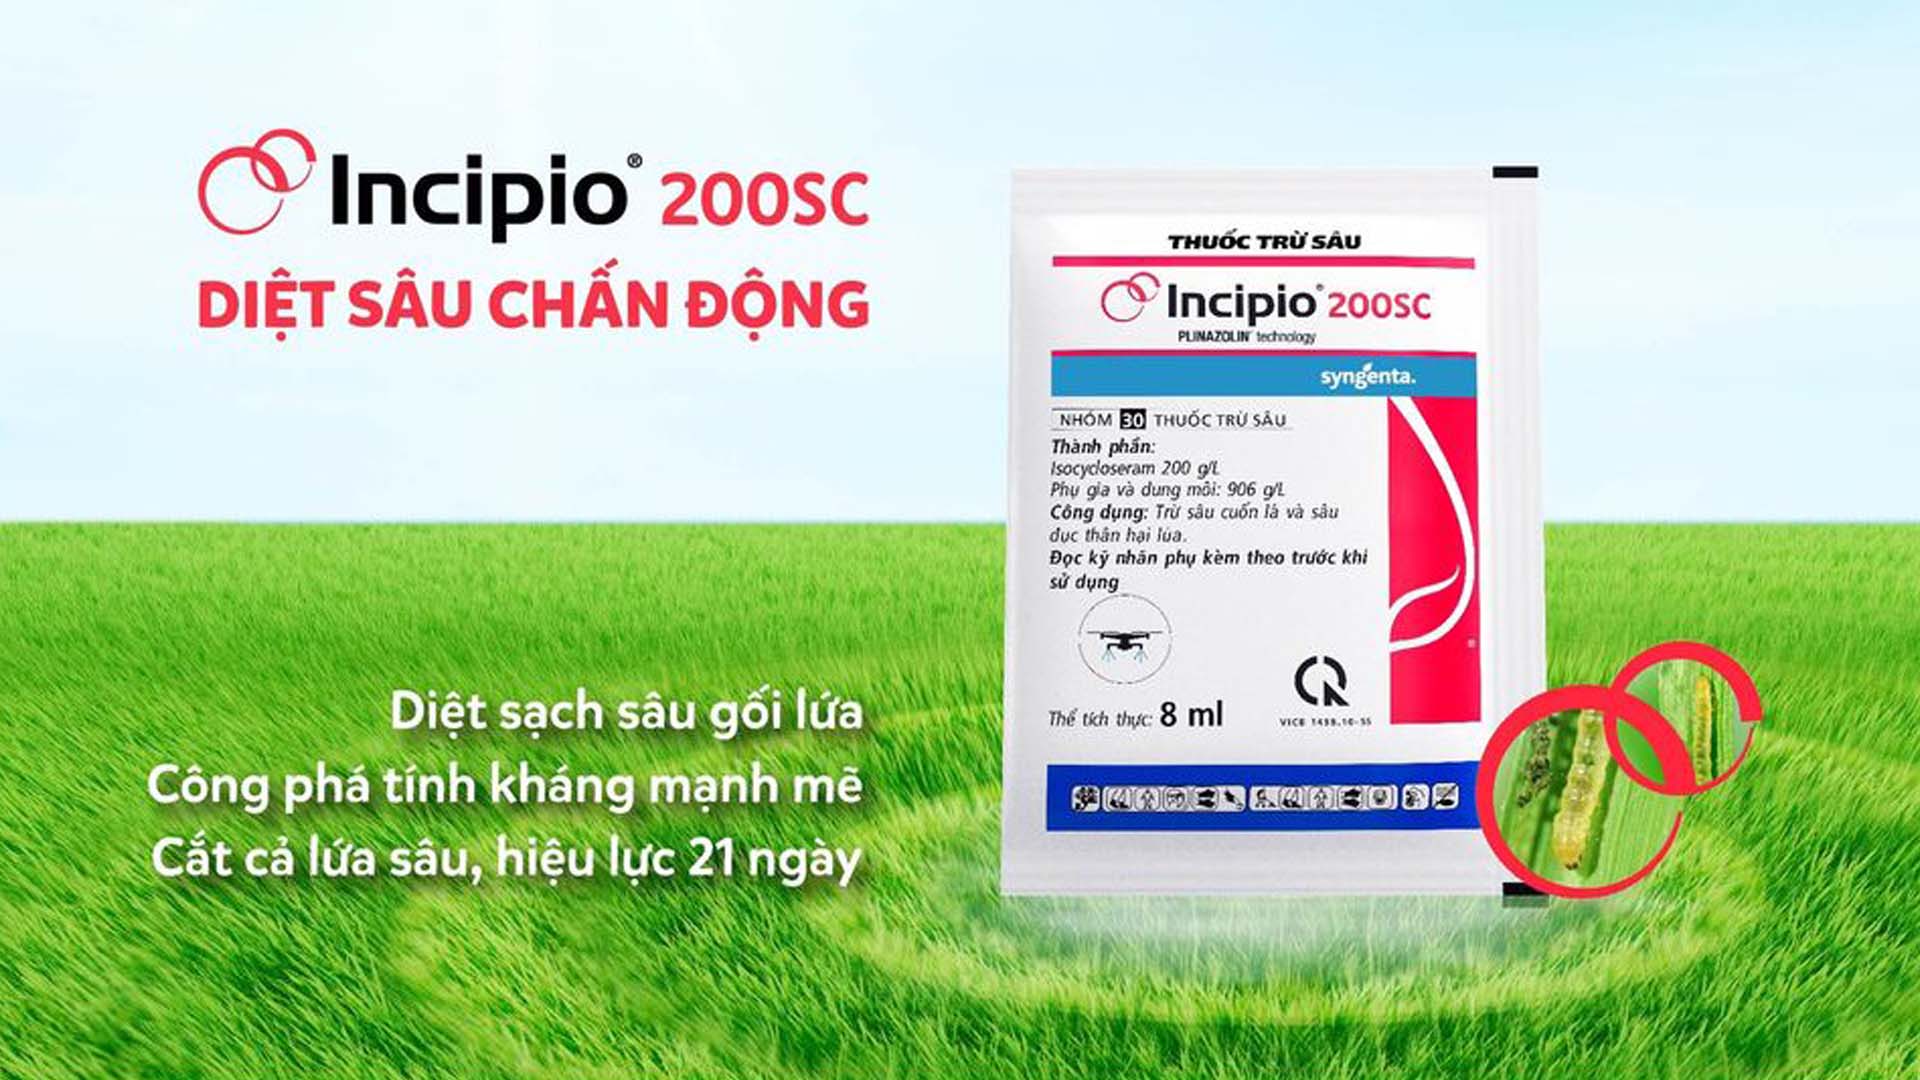 Thuốc trừ sâu cuốn lá lúa Incipio®️200SC -  Sản phẩm của Công ty TNHH Syngenta Việt Nam